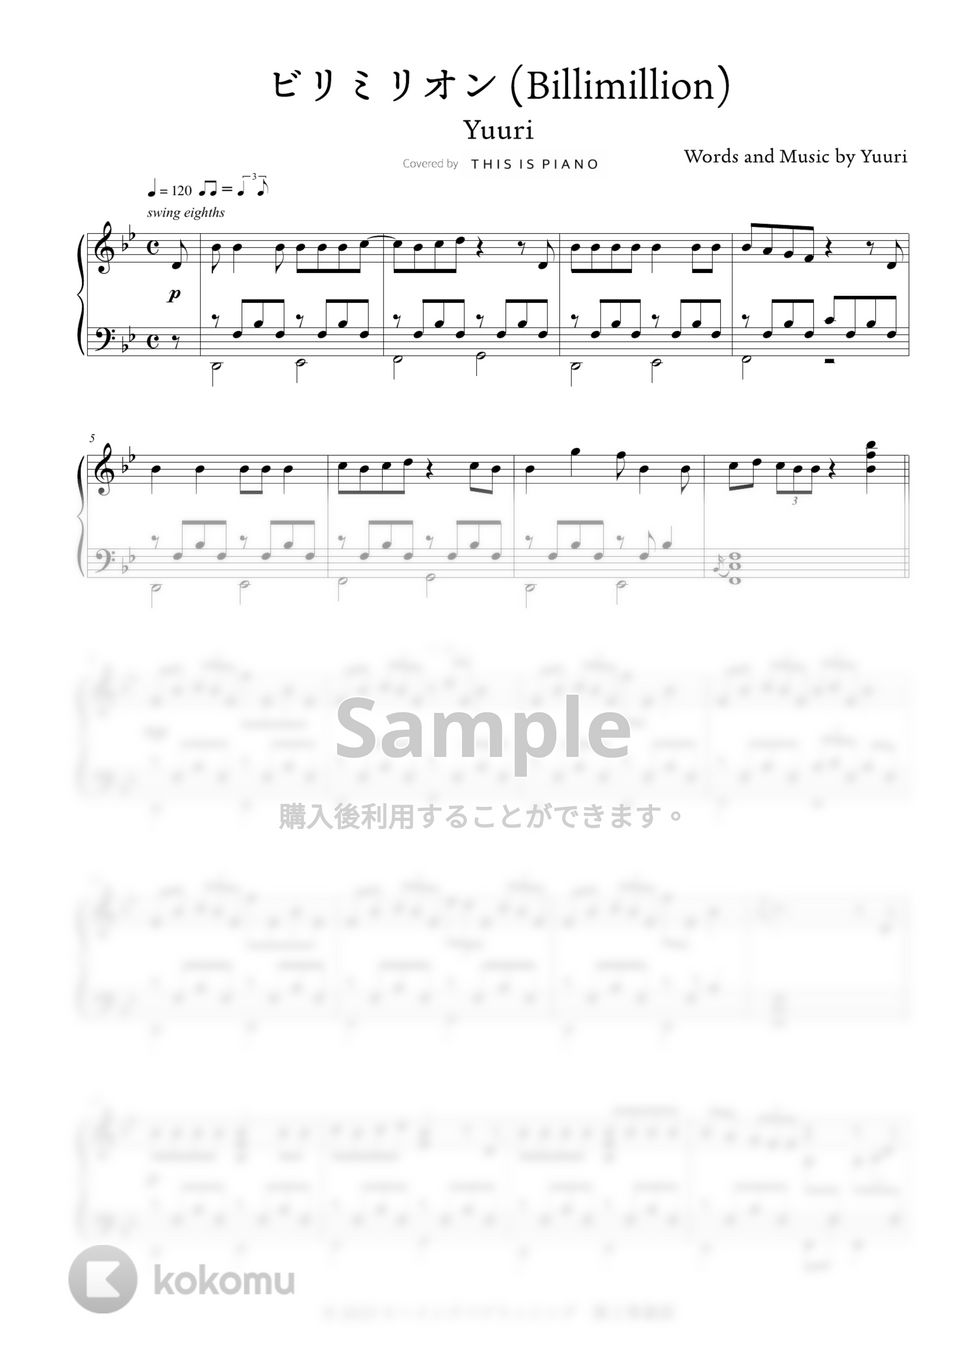 優里 - ビリミリオン by THIS IS PIANO